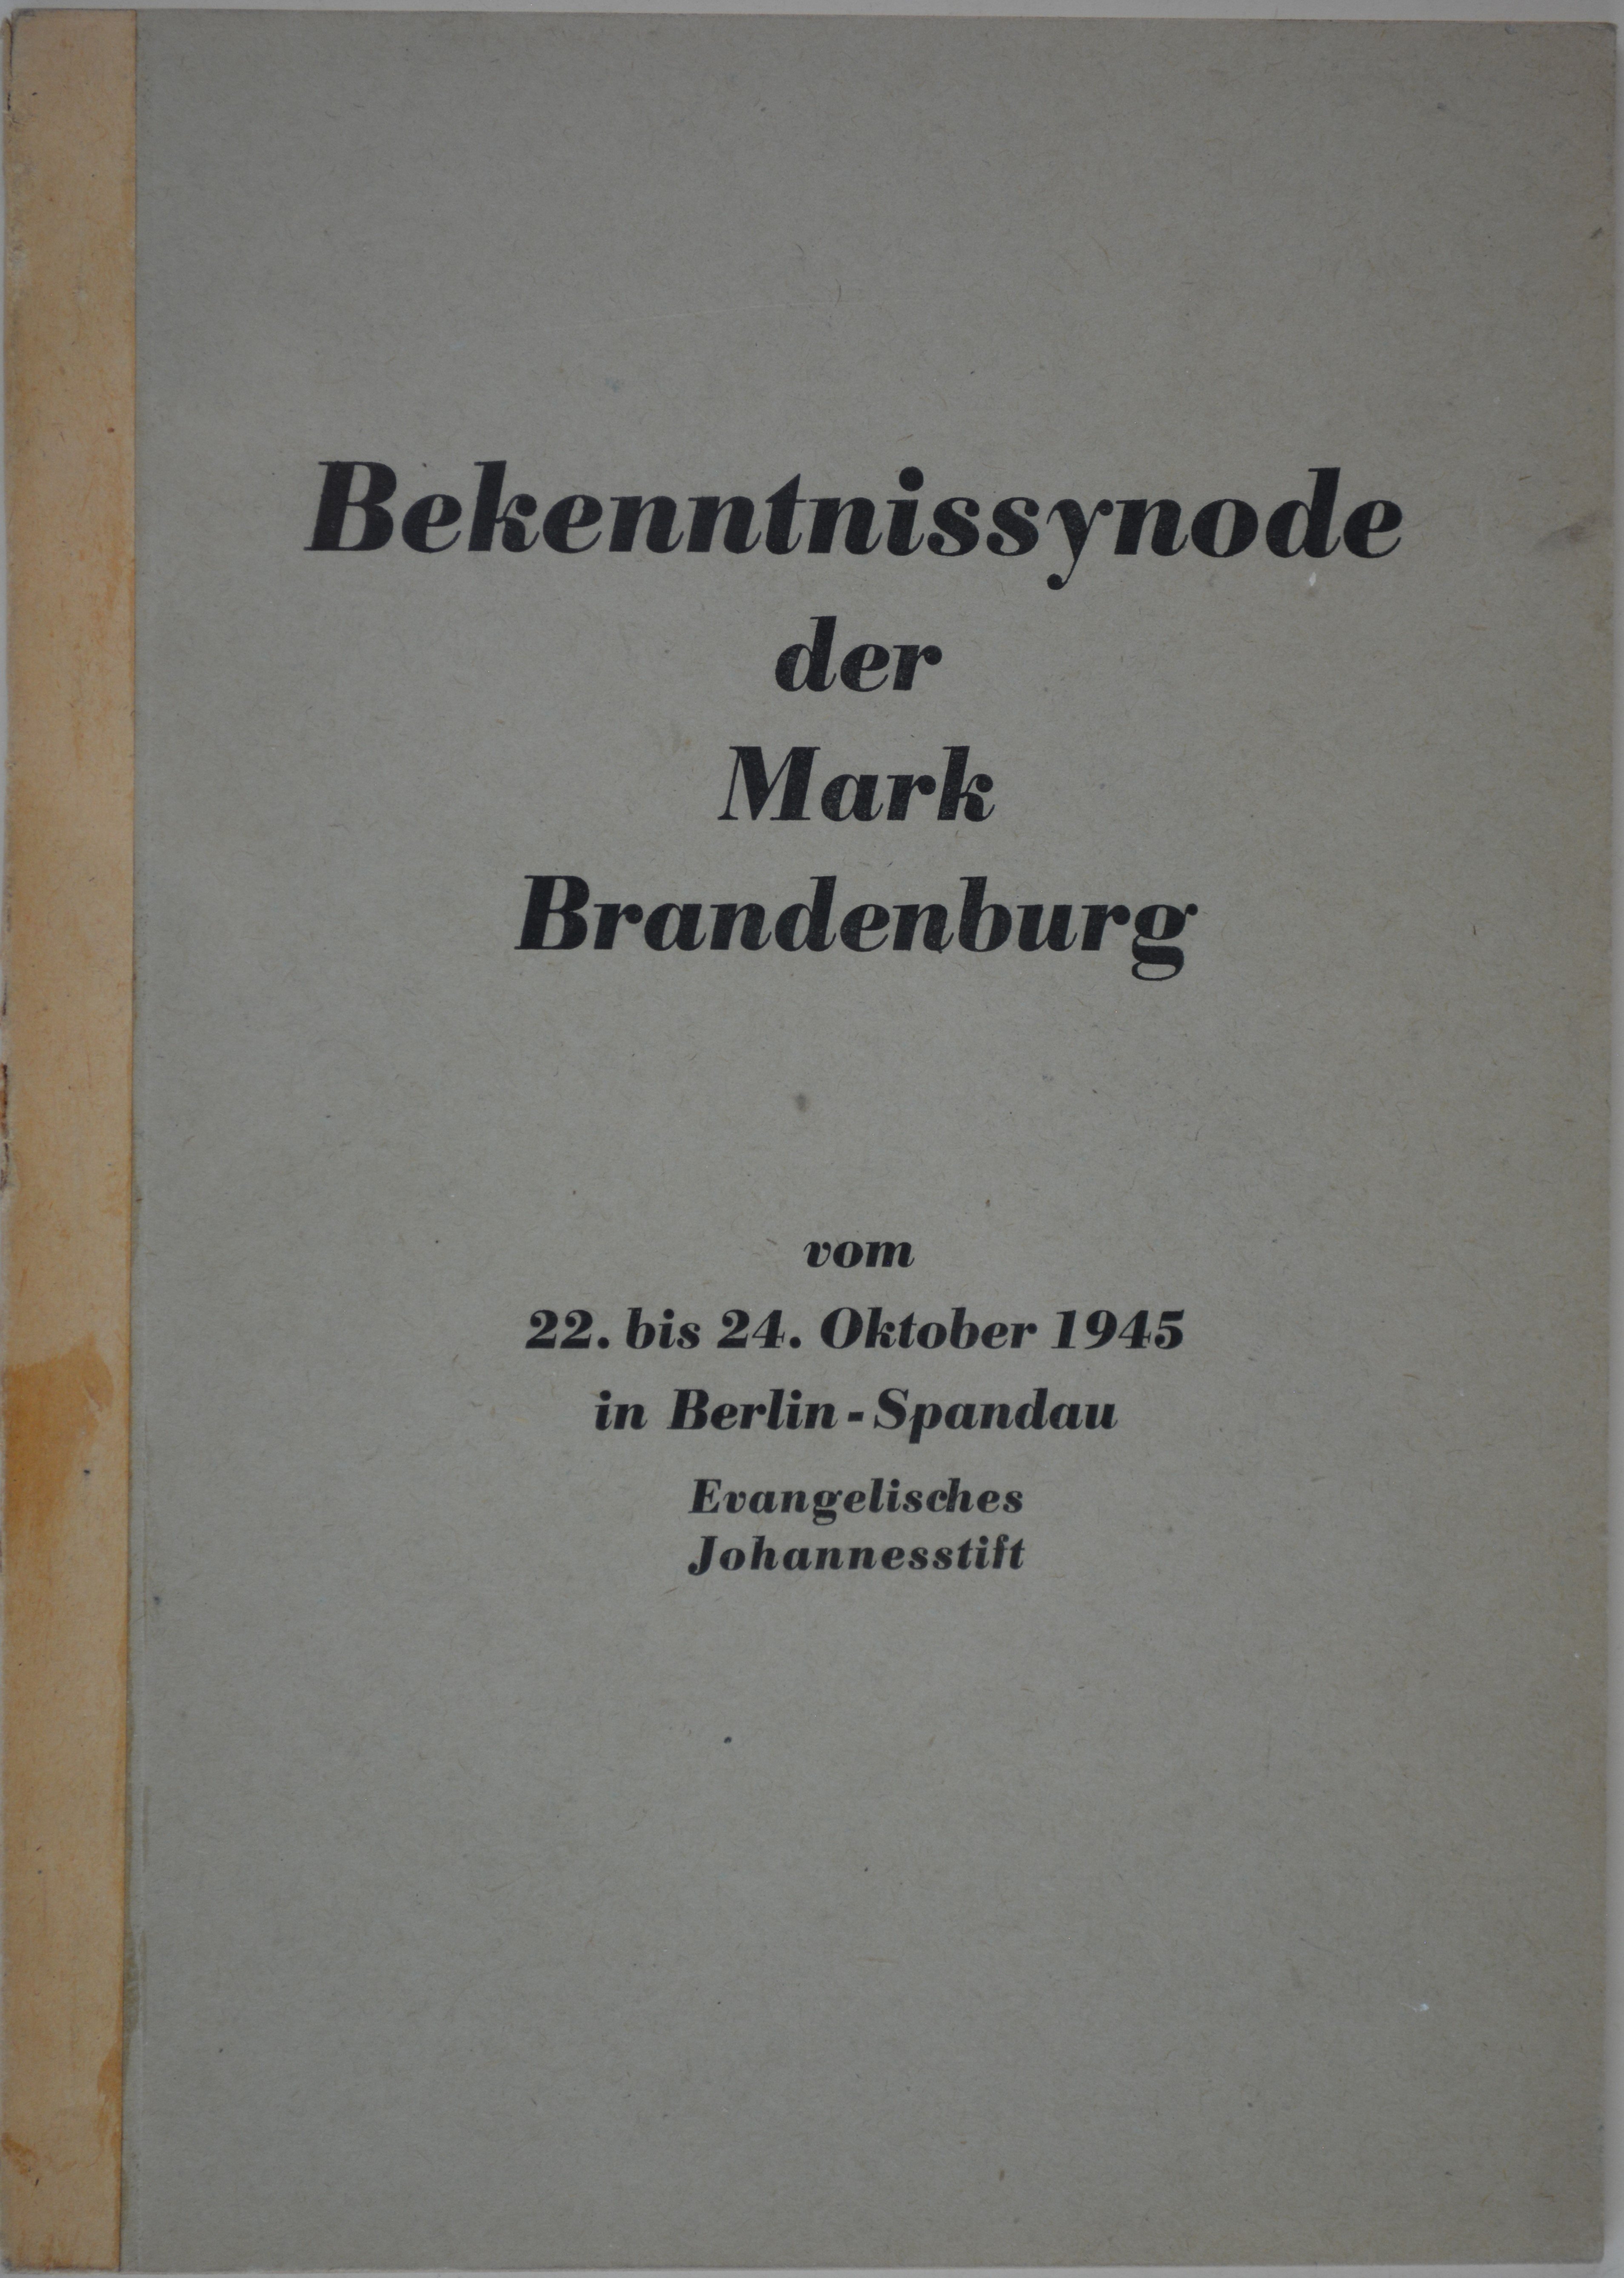 Broschüre: Bekenntnissynode der Mark Brandenburg vom 22. bis 24. Oktober in Berlin-Spandau (DDR Geschichtsmuseum im Dokumentationszentrum Perleberg CC BY-SA)